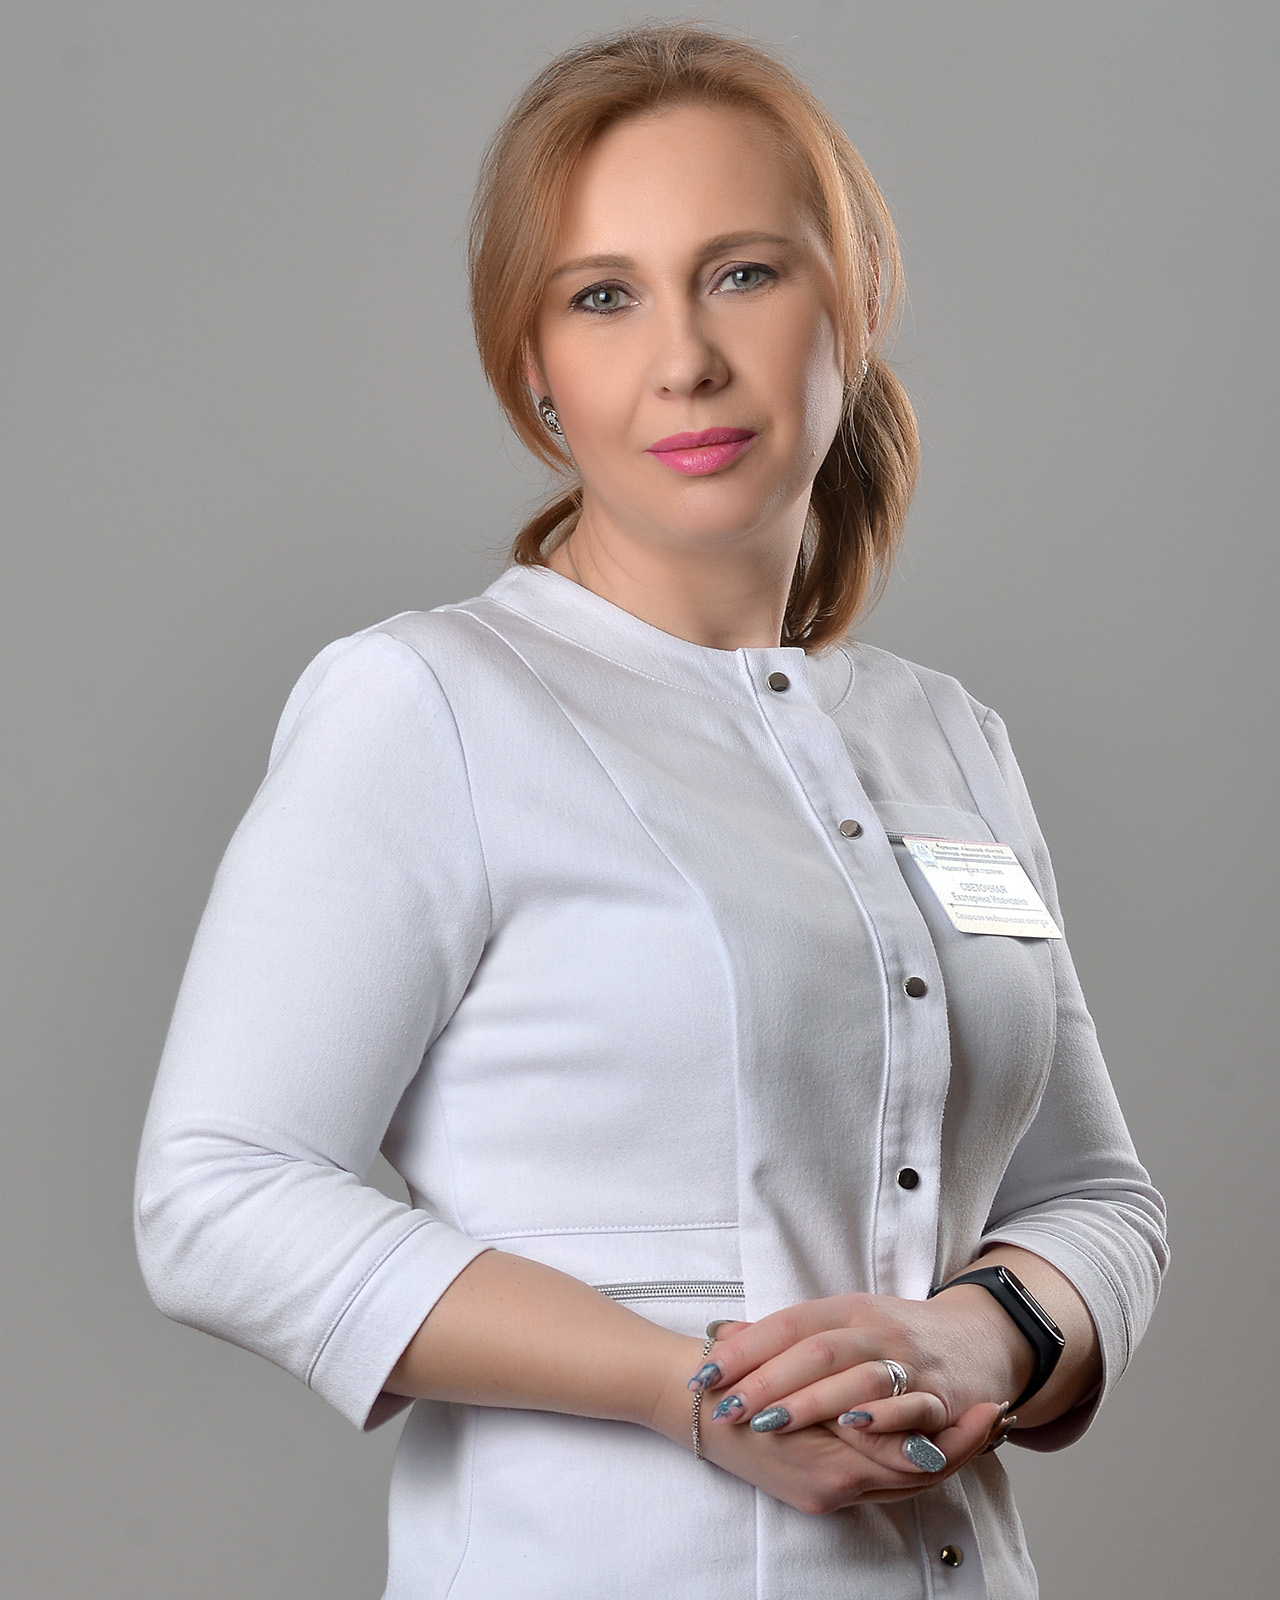 Светочная Екатерина Ивановна